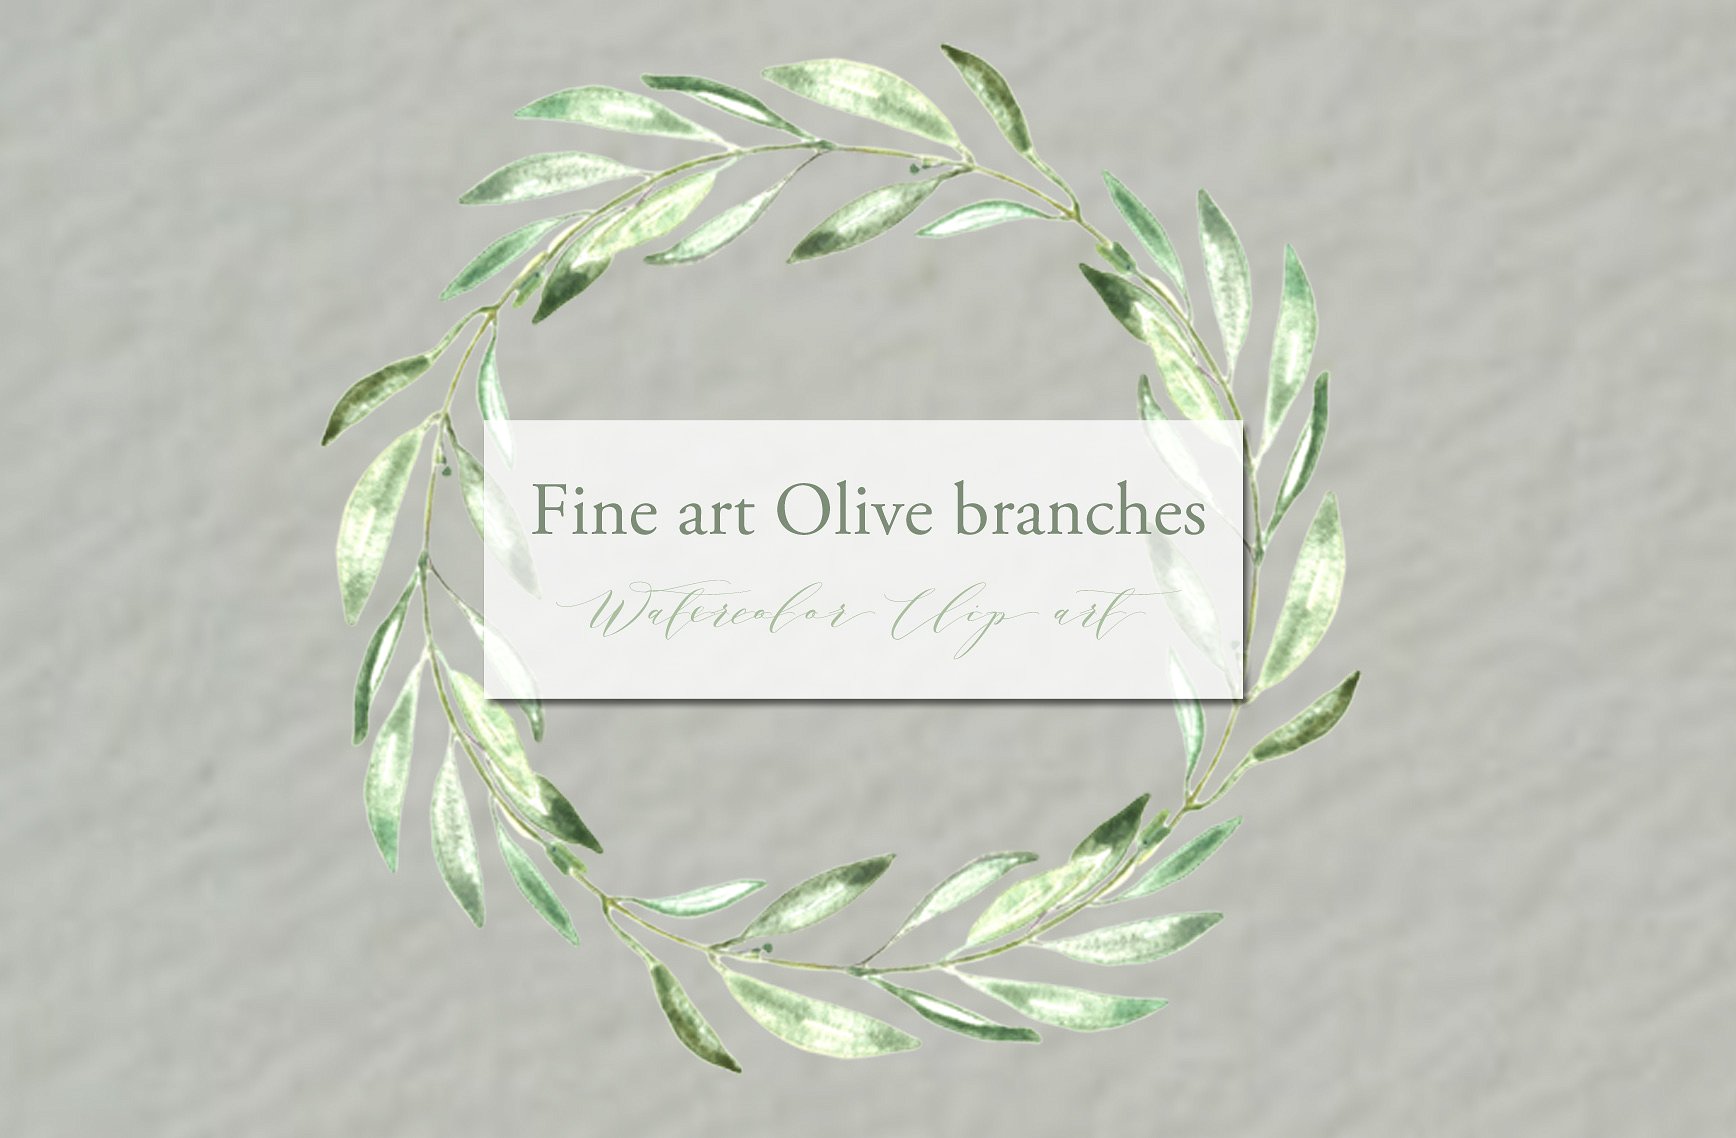 手绘水彩艺术橄榄枝设计素材Olive branches. F